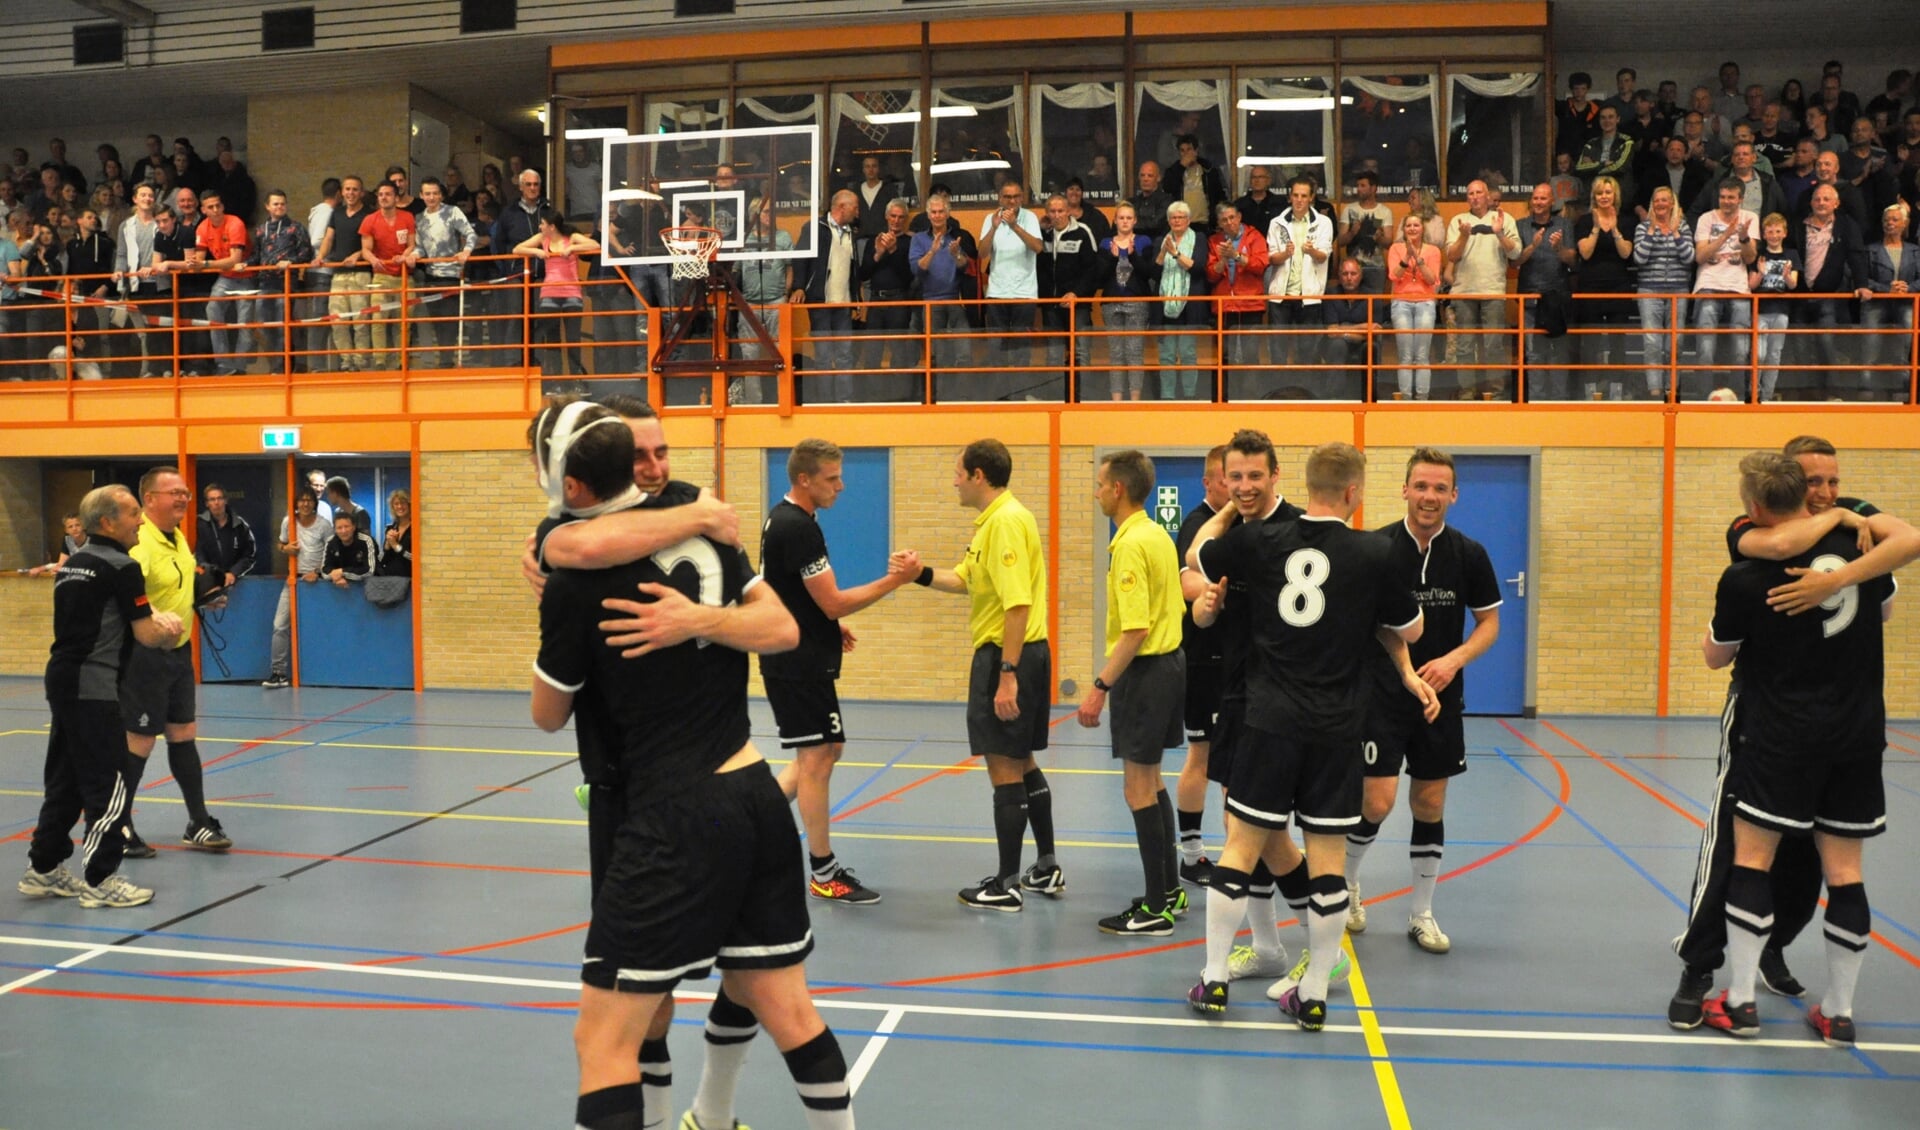 De zaalvoetballers van Texel'94 hebben het voor elkaar. Het team speelt volgend seizoen in de eerste divisie, het op eennahoogste niveau in Nederland op het gebied van zaalvoetbal. Het team promoveerde vrijdagavond door een klinkende 6-2 overwinning op de Ruif uit Tuitjenhorn. Niet eerder speelde een Texels zaalvoetbalteam op zo'n hoog niveau. 